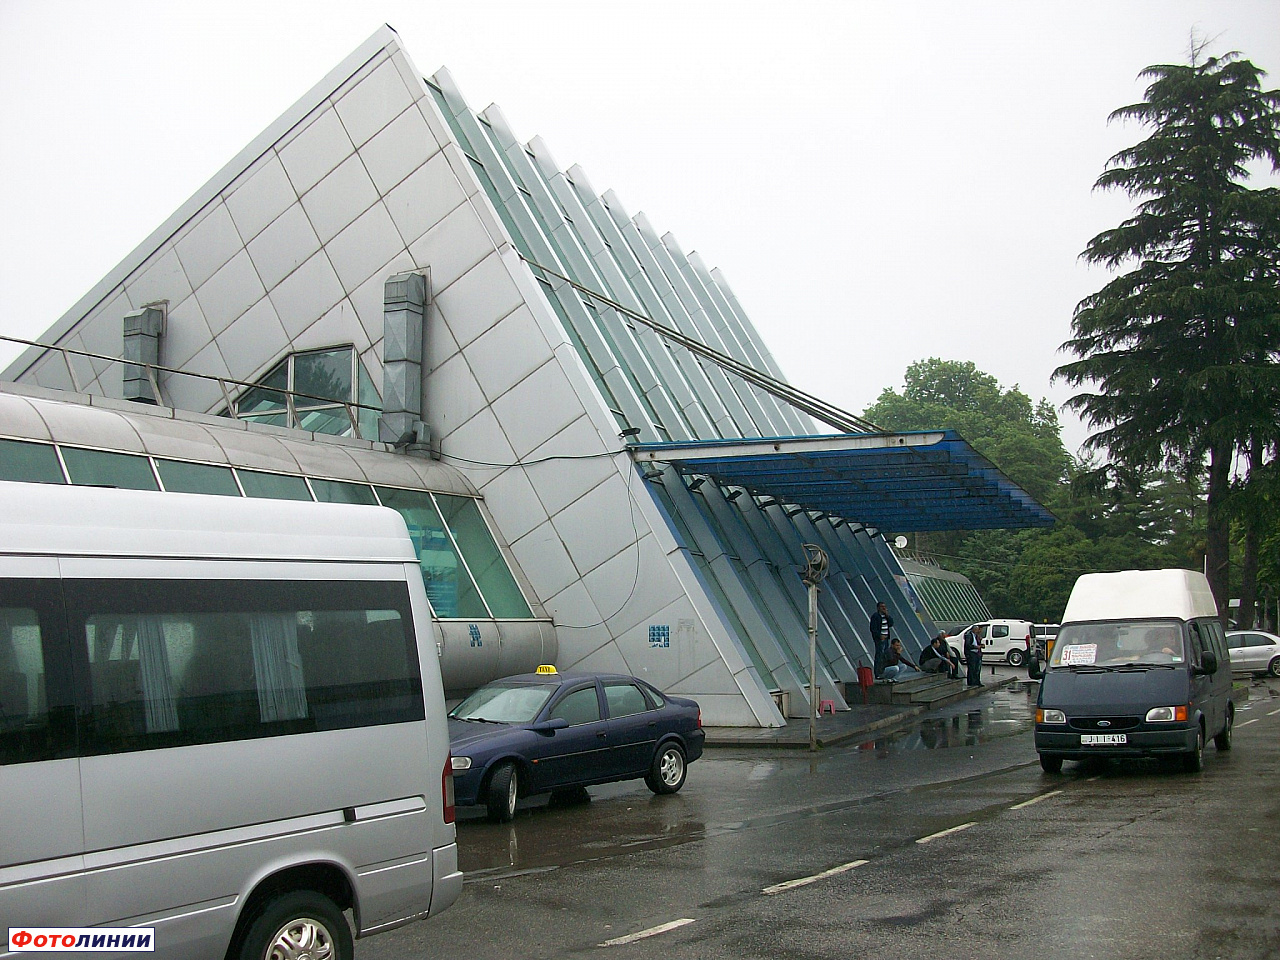 Пассажирское здание, вид с обратной стороны